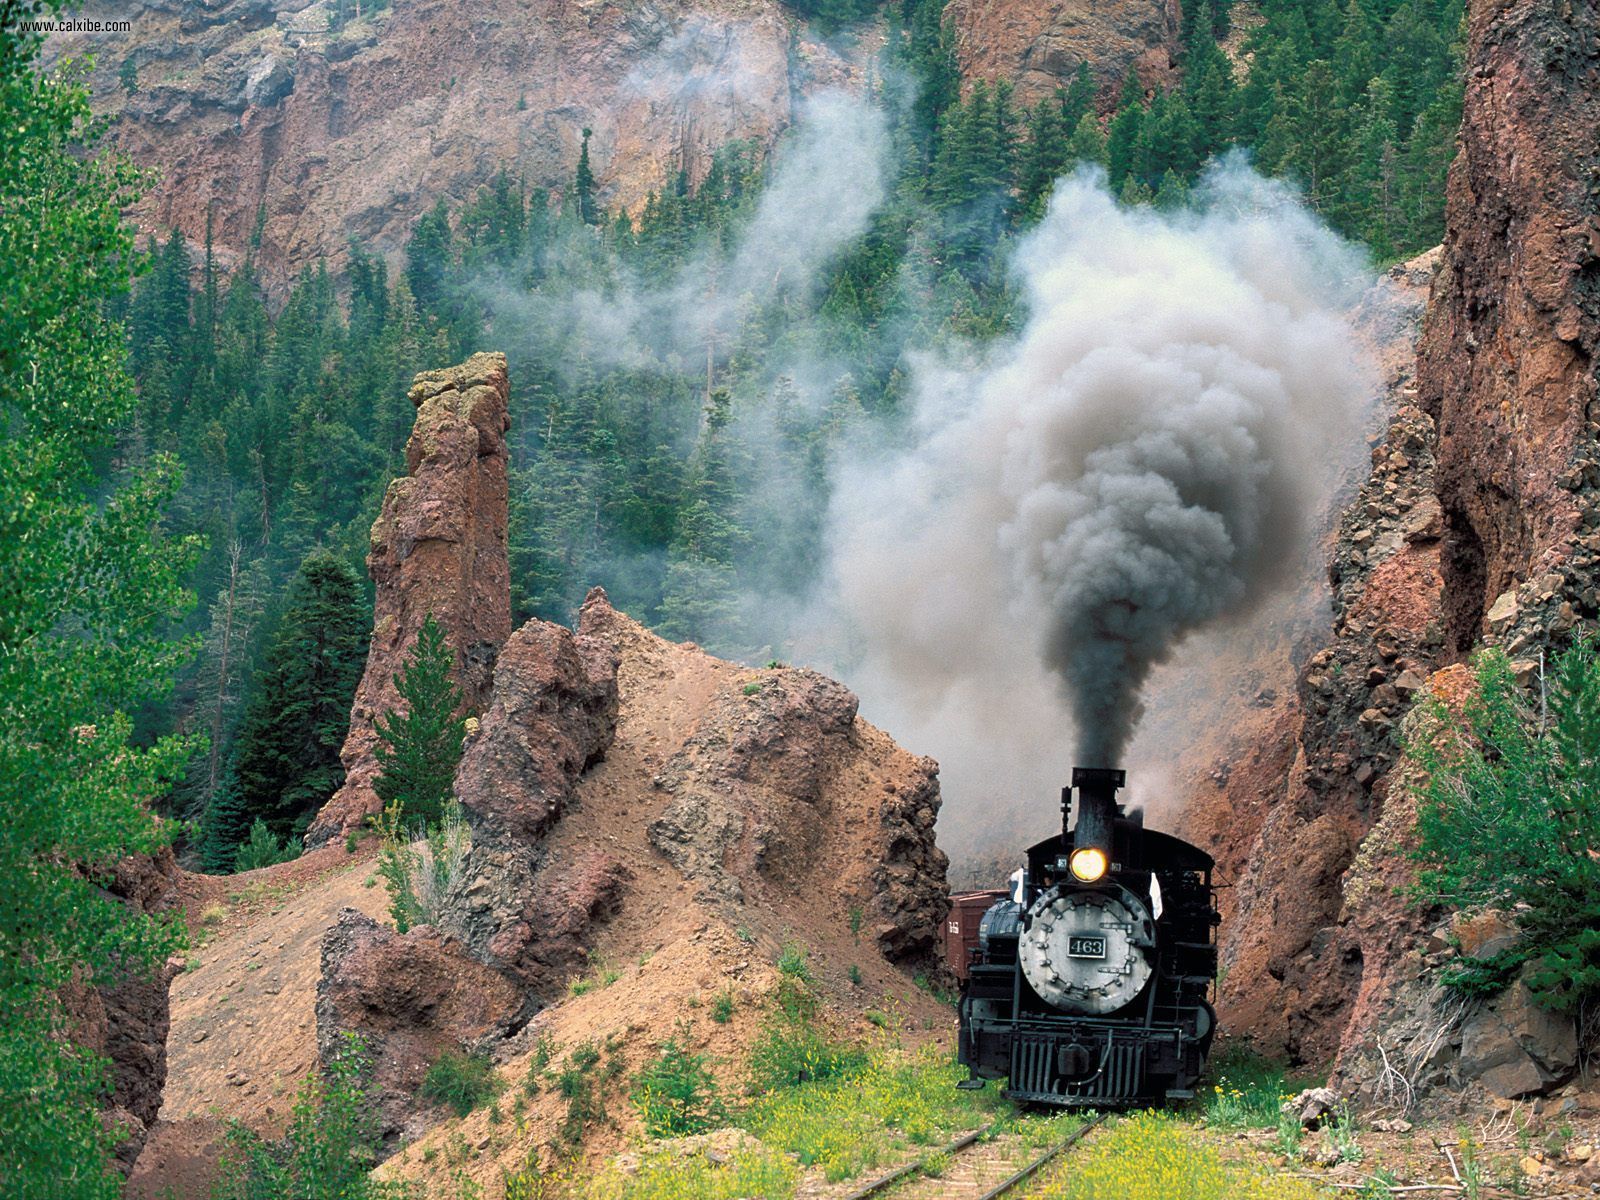 Motor Cumbres Toltec Scenic Railroad Colorado picture nr 19653 1600x1200